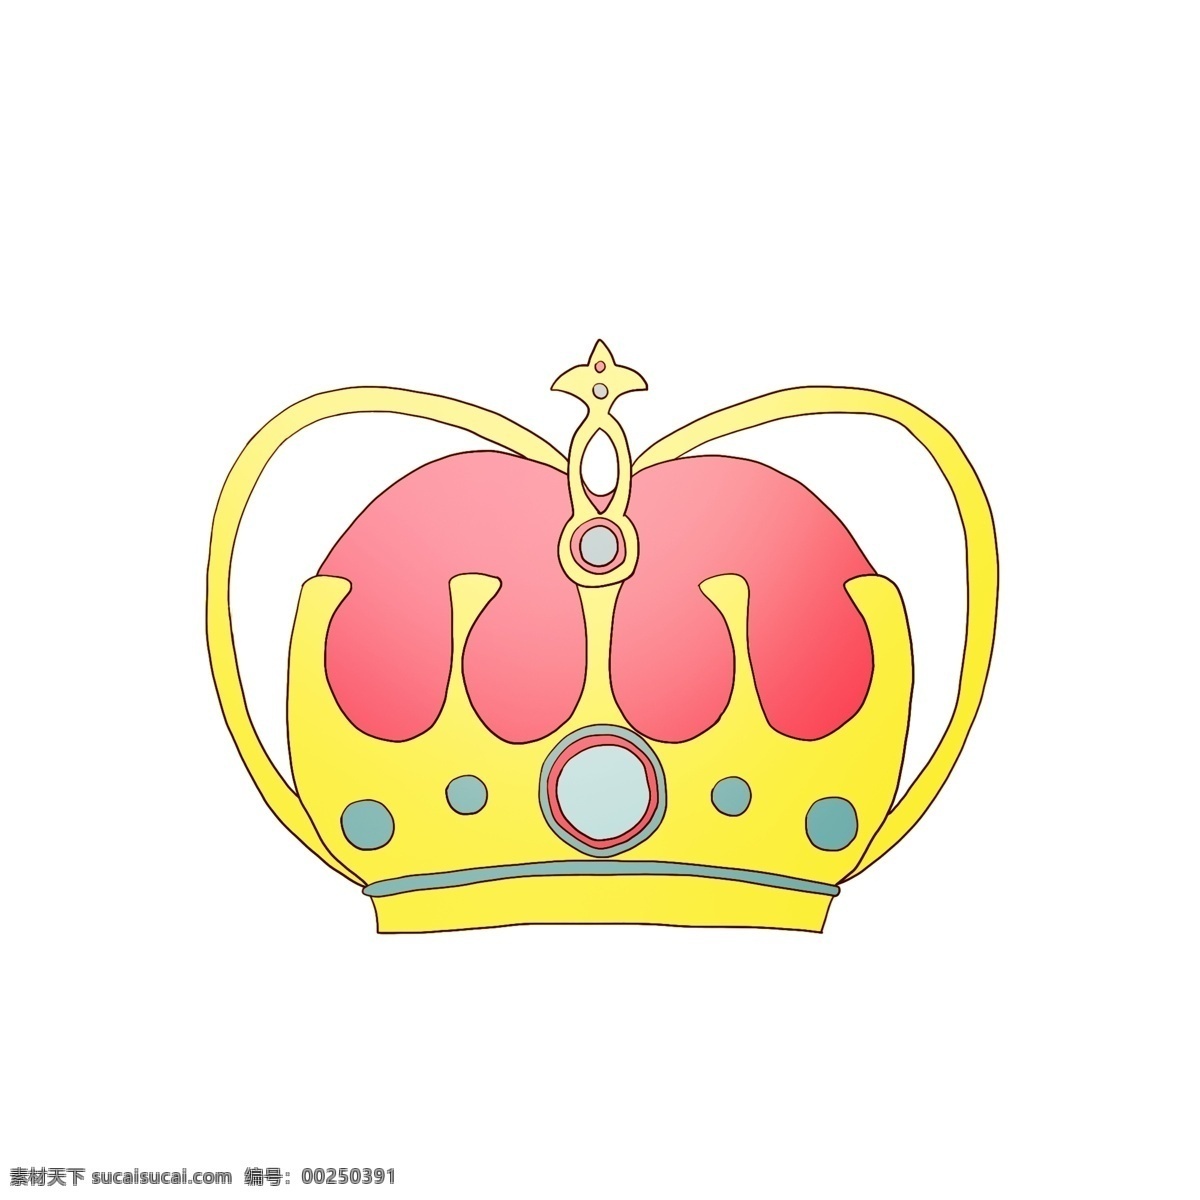 黄色 精美 皇冠 插画 黄色的皇冠 奢华的皇冠 红色的皇冠 皇冠装饰 卡通皇冠 手绘皇冠 皇冠插画